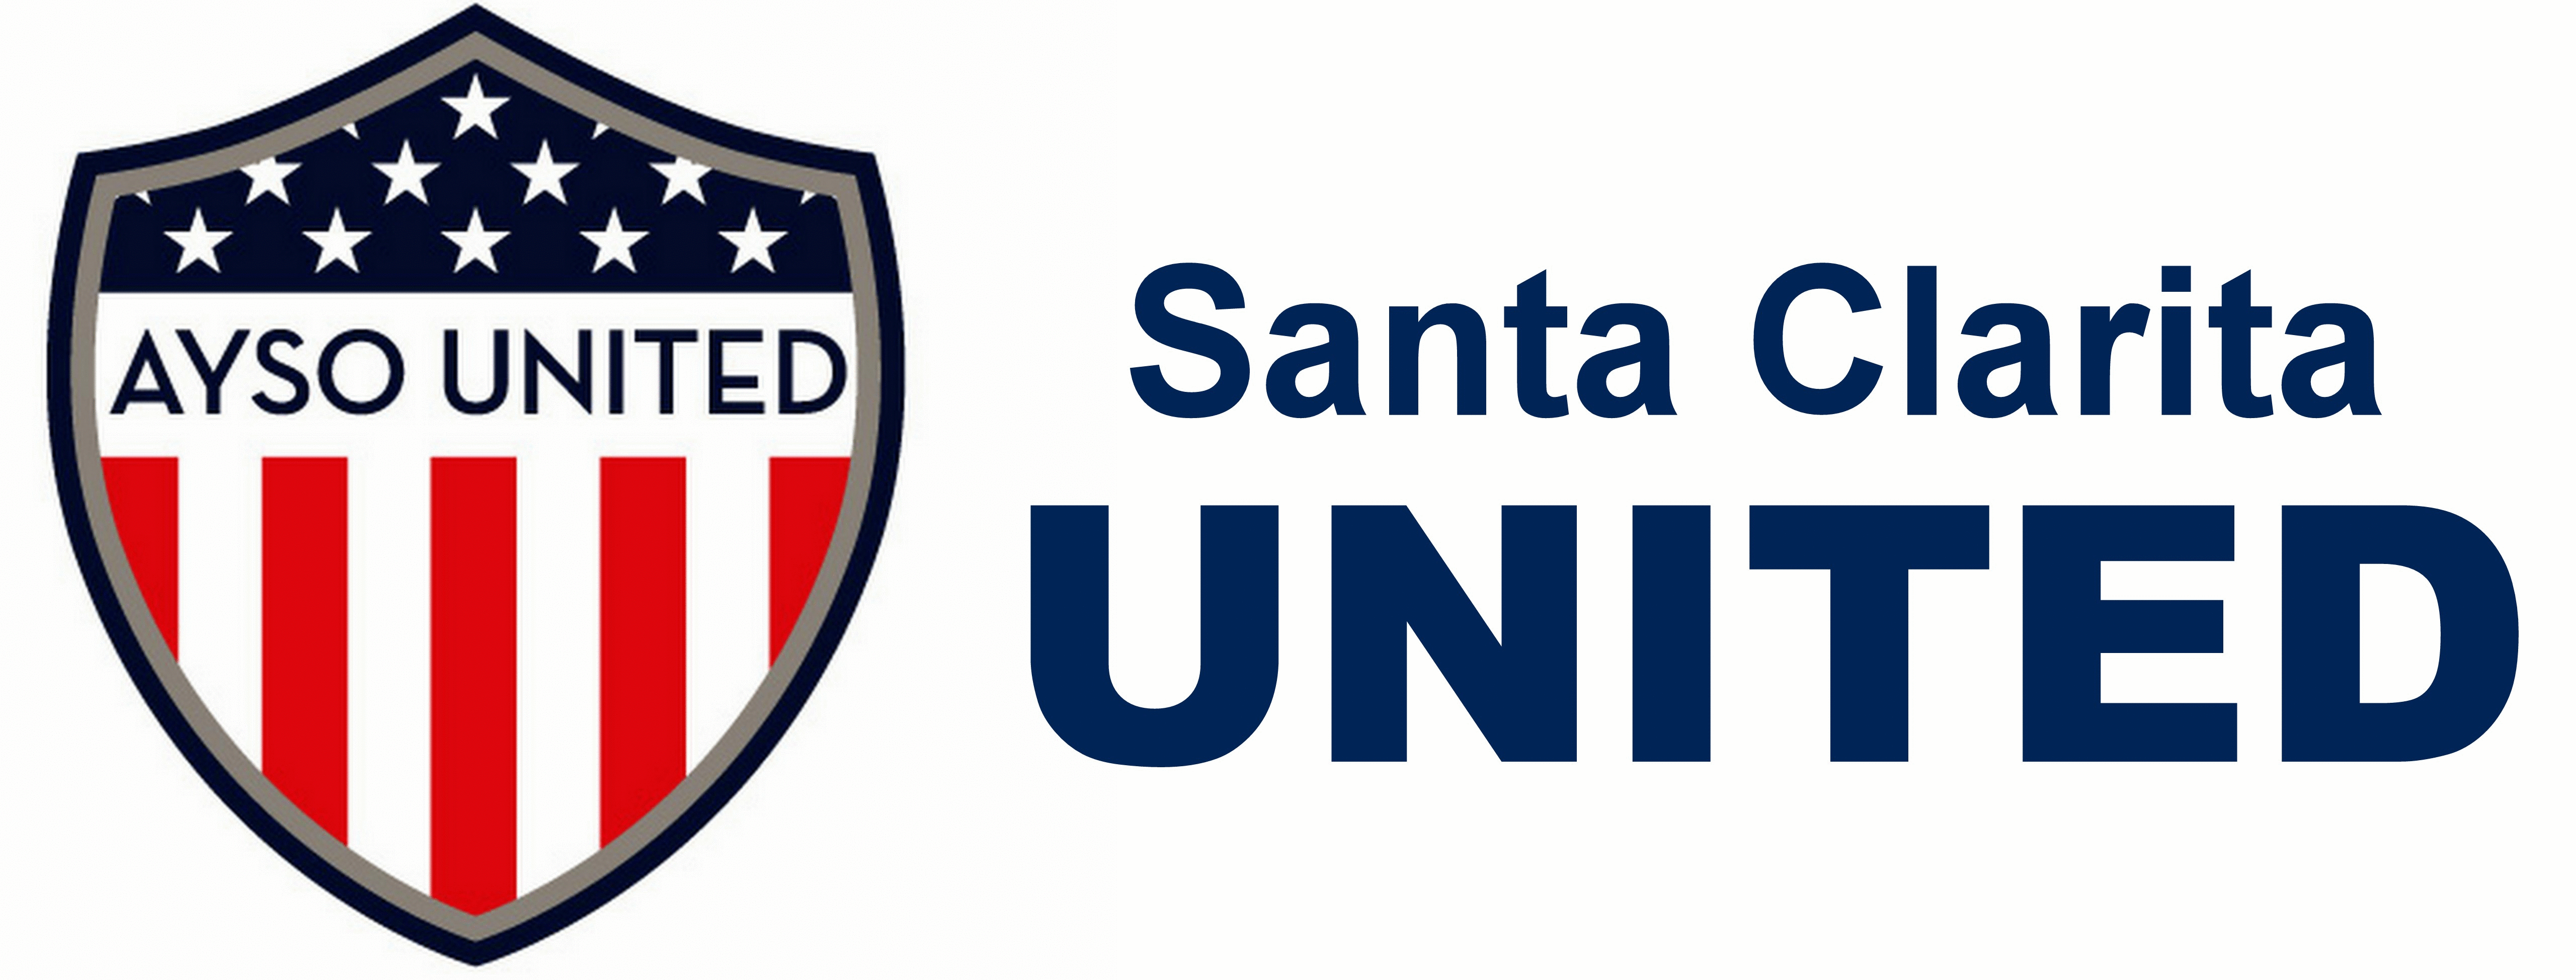 AYSO United Logo - Santa Clarita United. AYSO Region 678